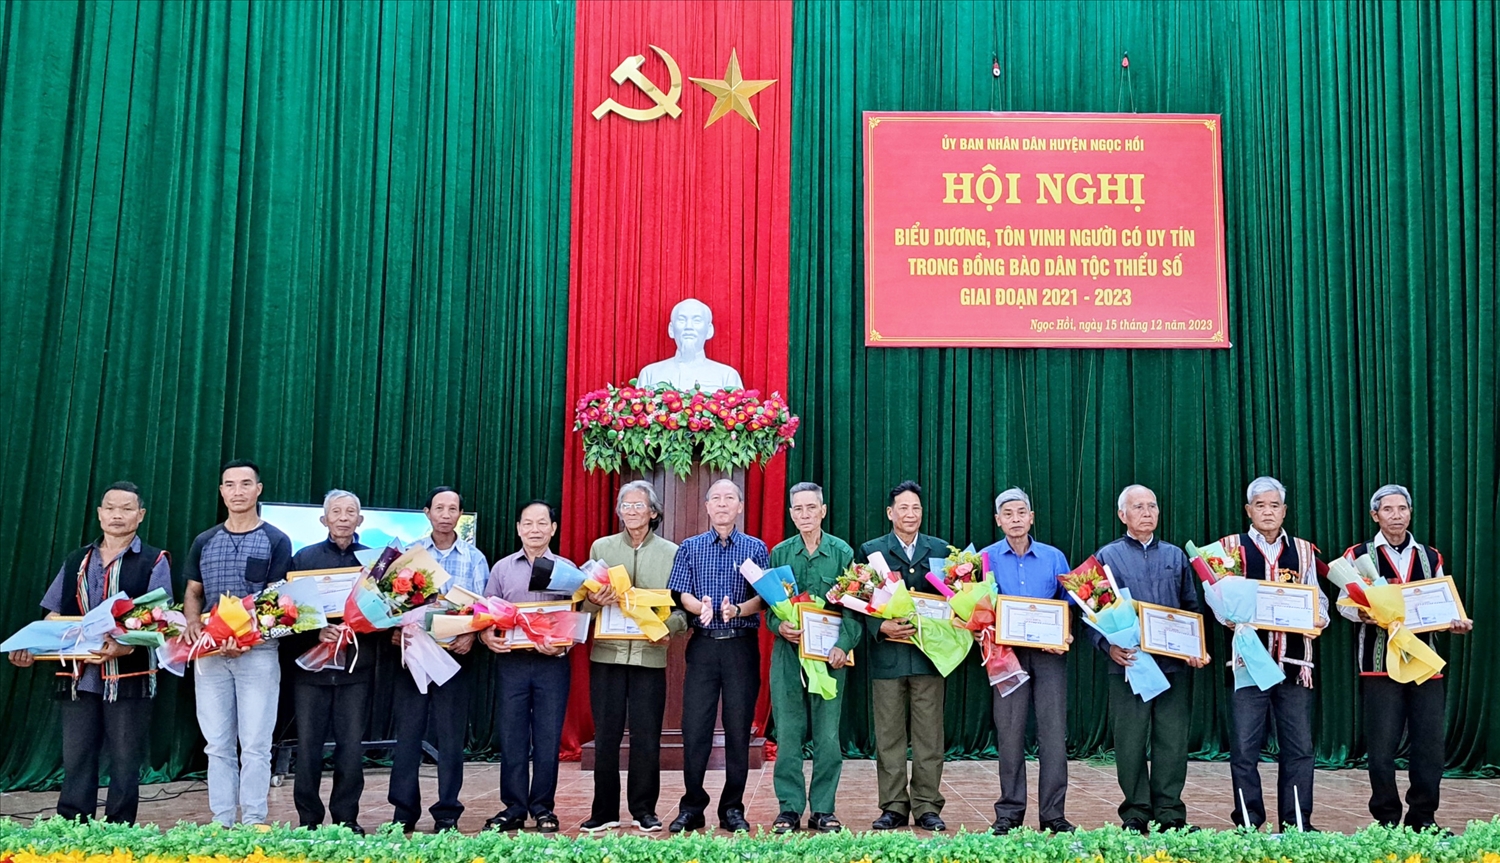 lãnh đạo UBND huyện Ngọc Hồi đã biểu dương, tôn vinh 12 Người có uy tín tiêu biểu.